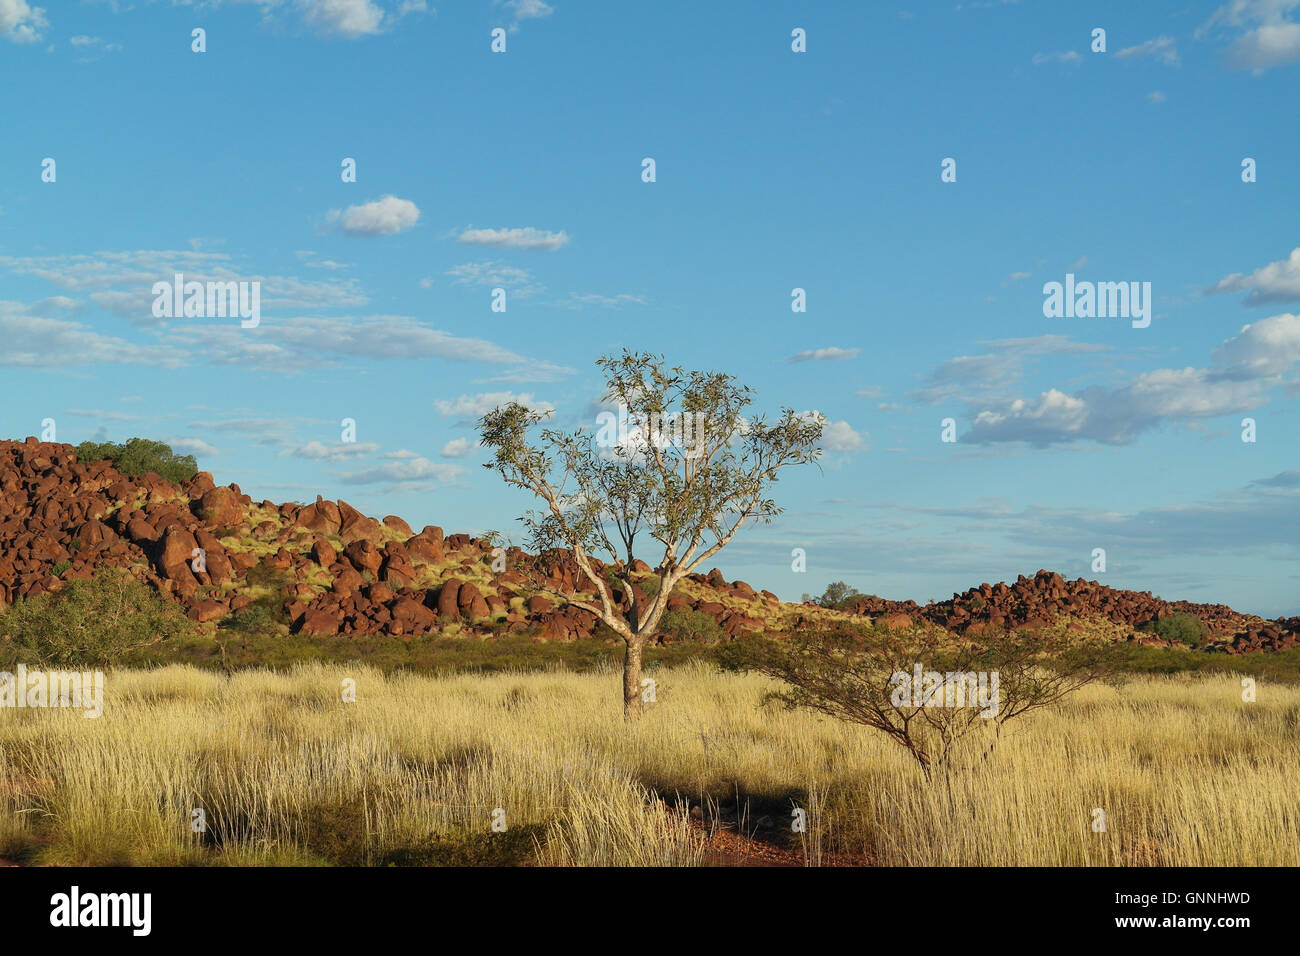 Typische Outback-Landschaft im Bereich von Karijini / Pilbara - Western Australia - Australien Stockfoto